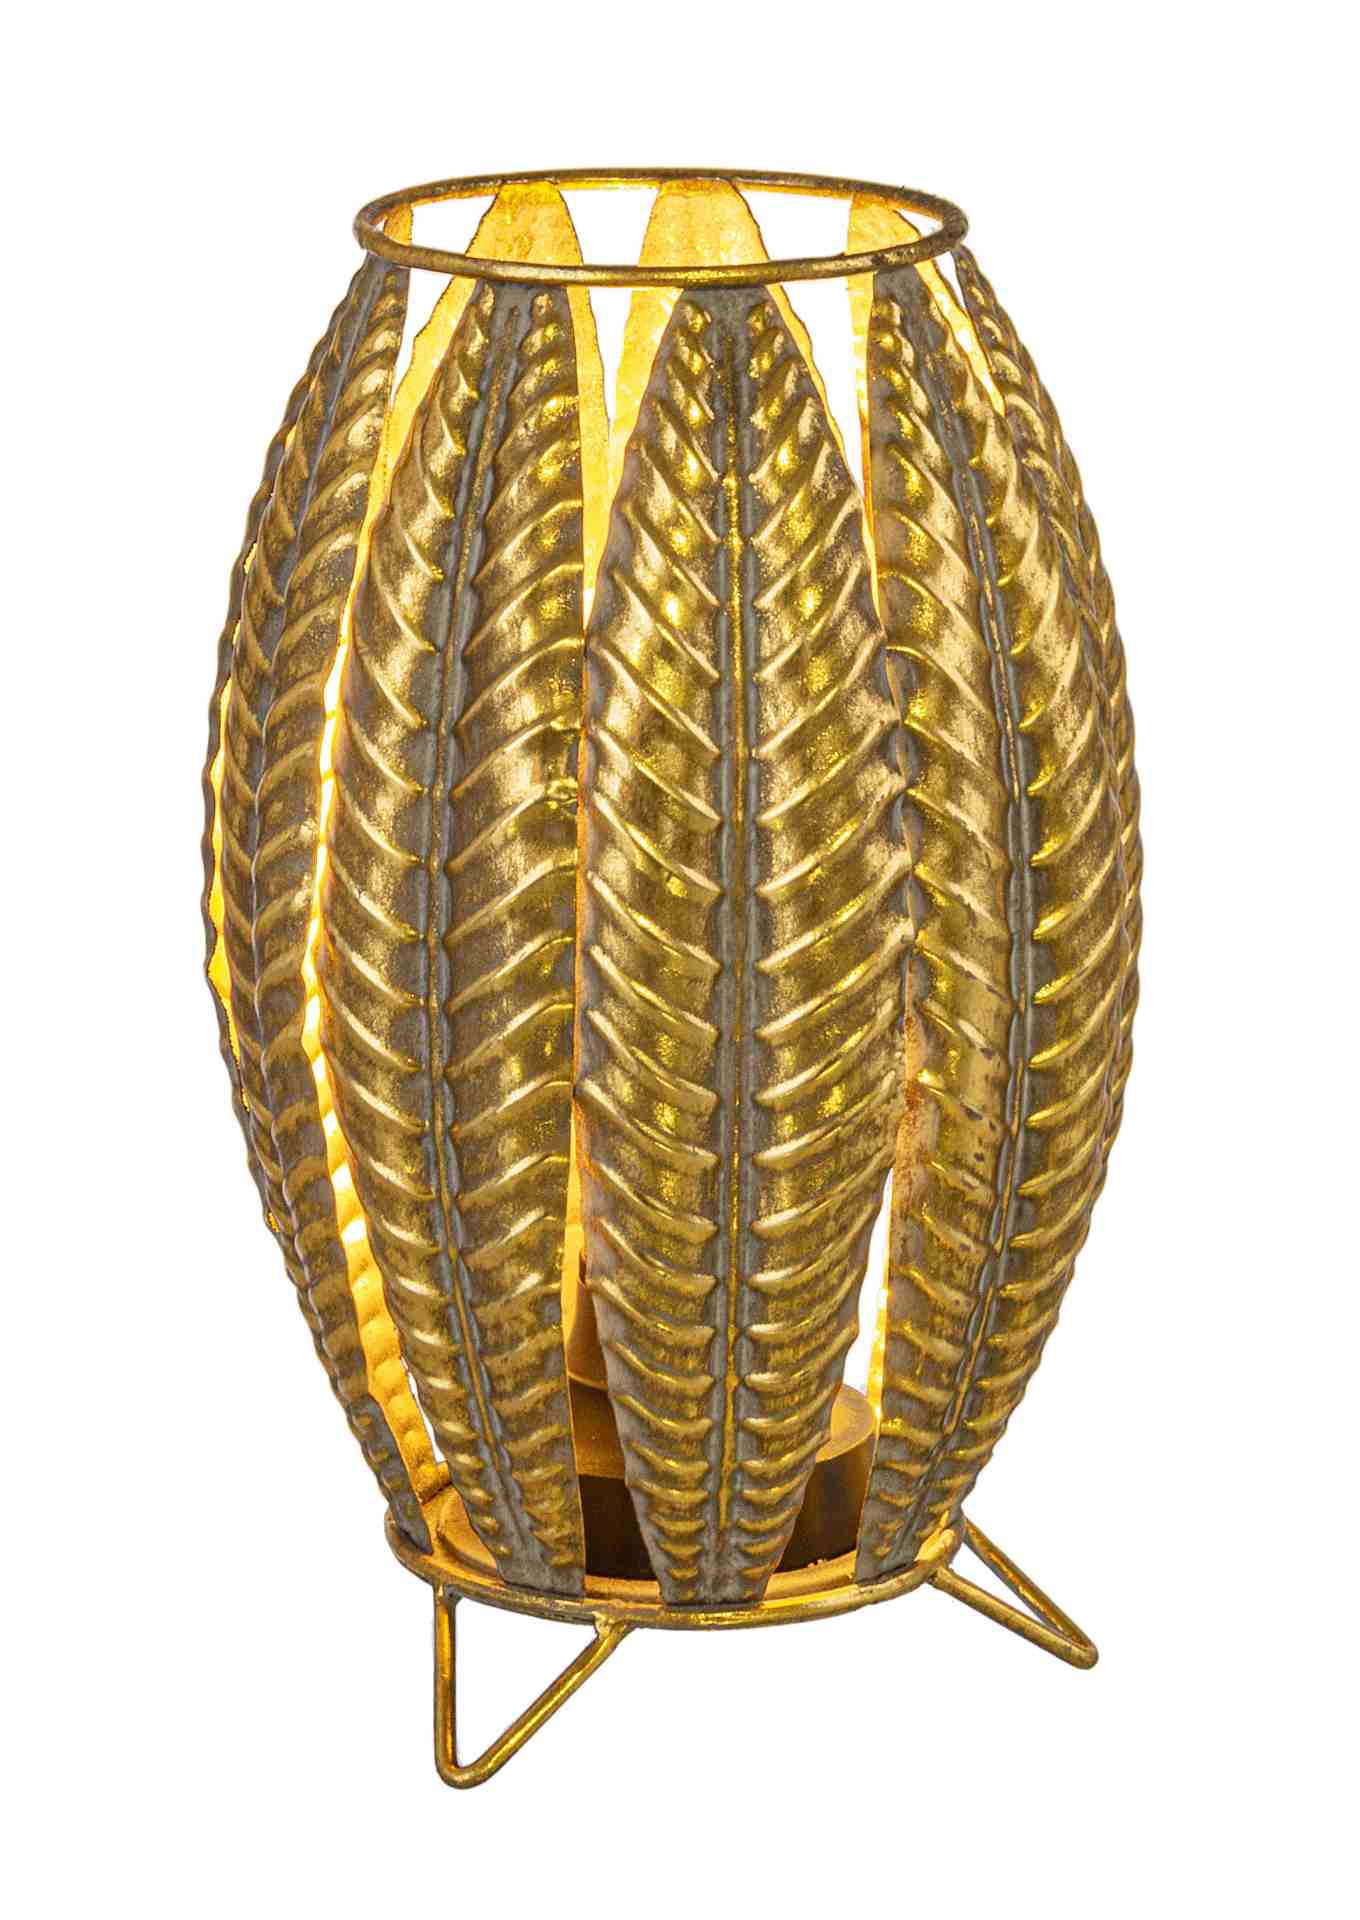 Die Tischleuchte Tarfaya überzeugt mit ihrem klassischen Design. Gefertigt wurde sie aus Metall, welches einen goldenen Farbton besitzt. Der Lampenschirm ist auch aus Metall und hat eine goldene Farbe. Die Lampe besitzt eine Höhe von 26,5 cm.